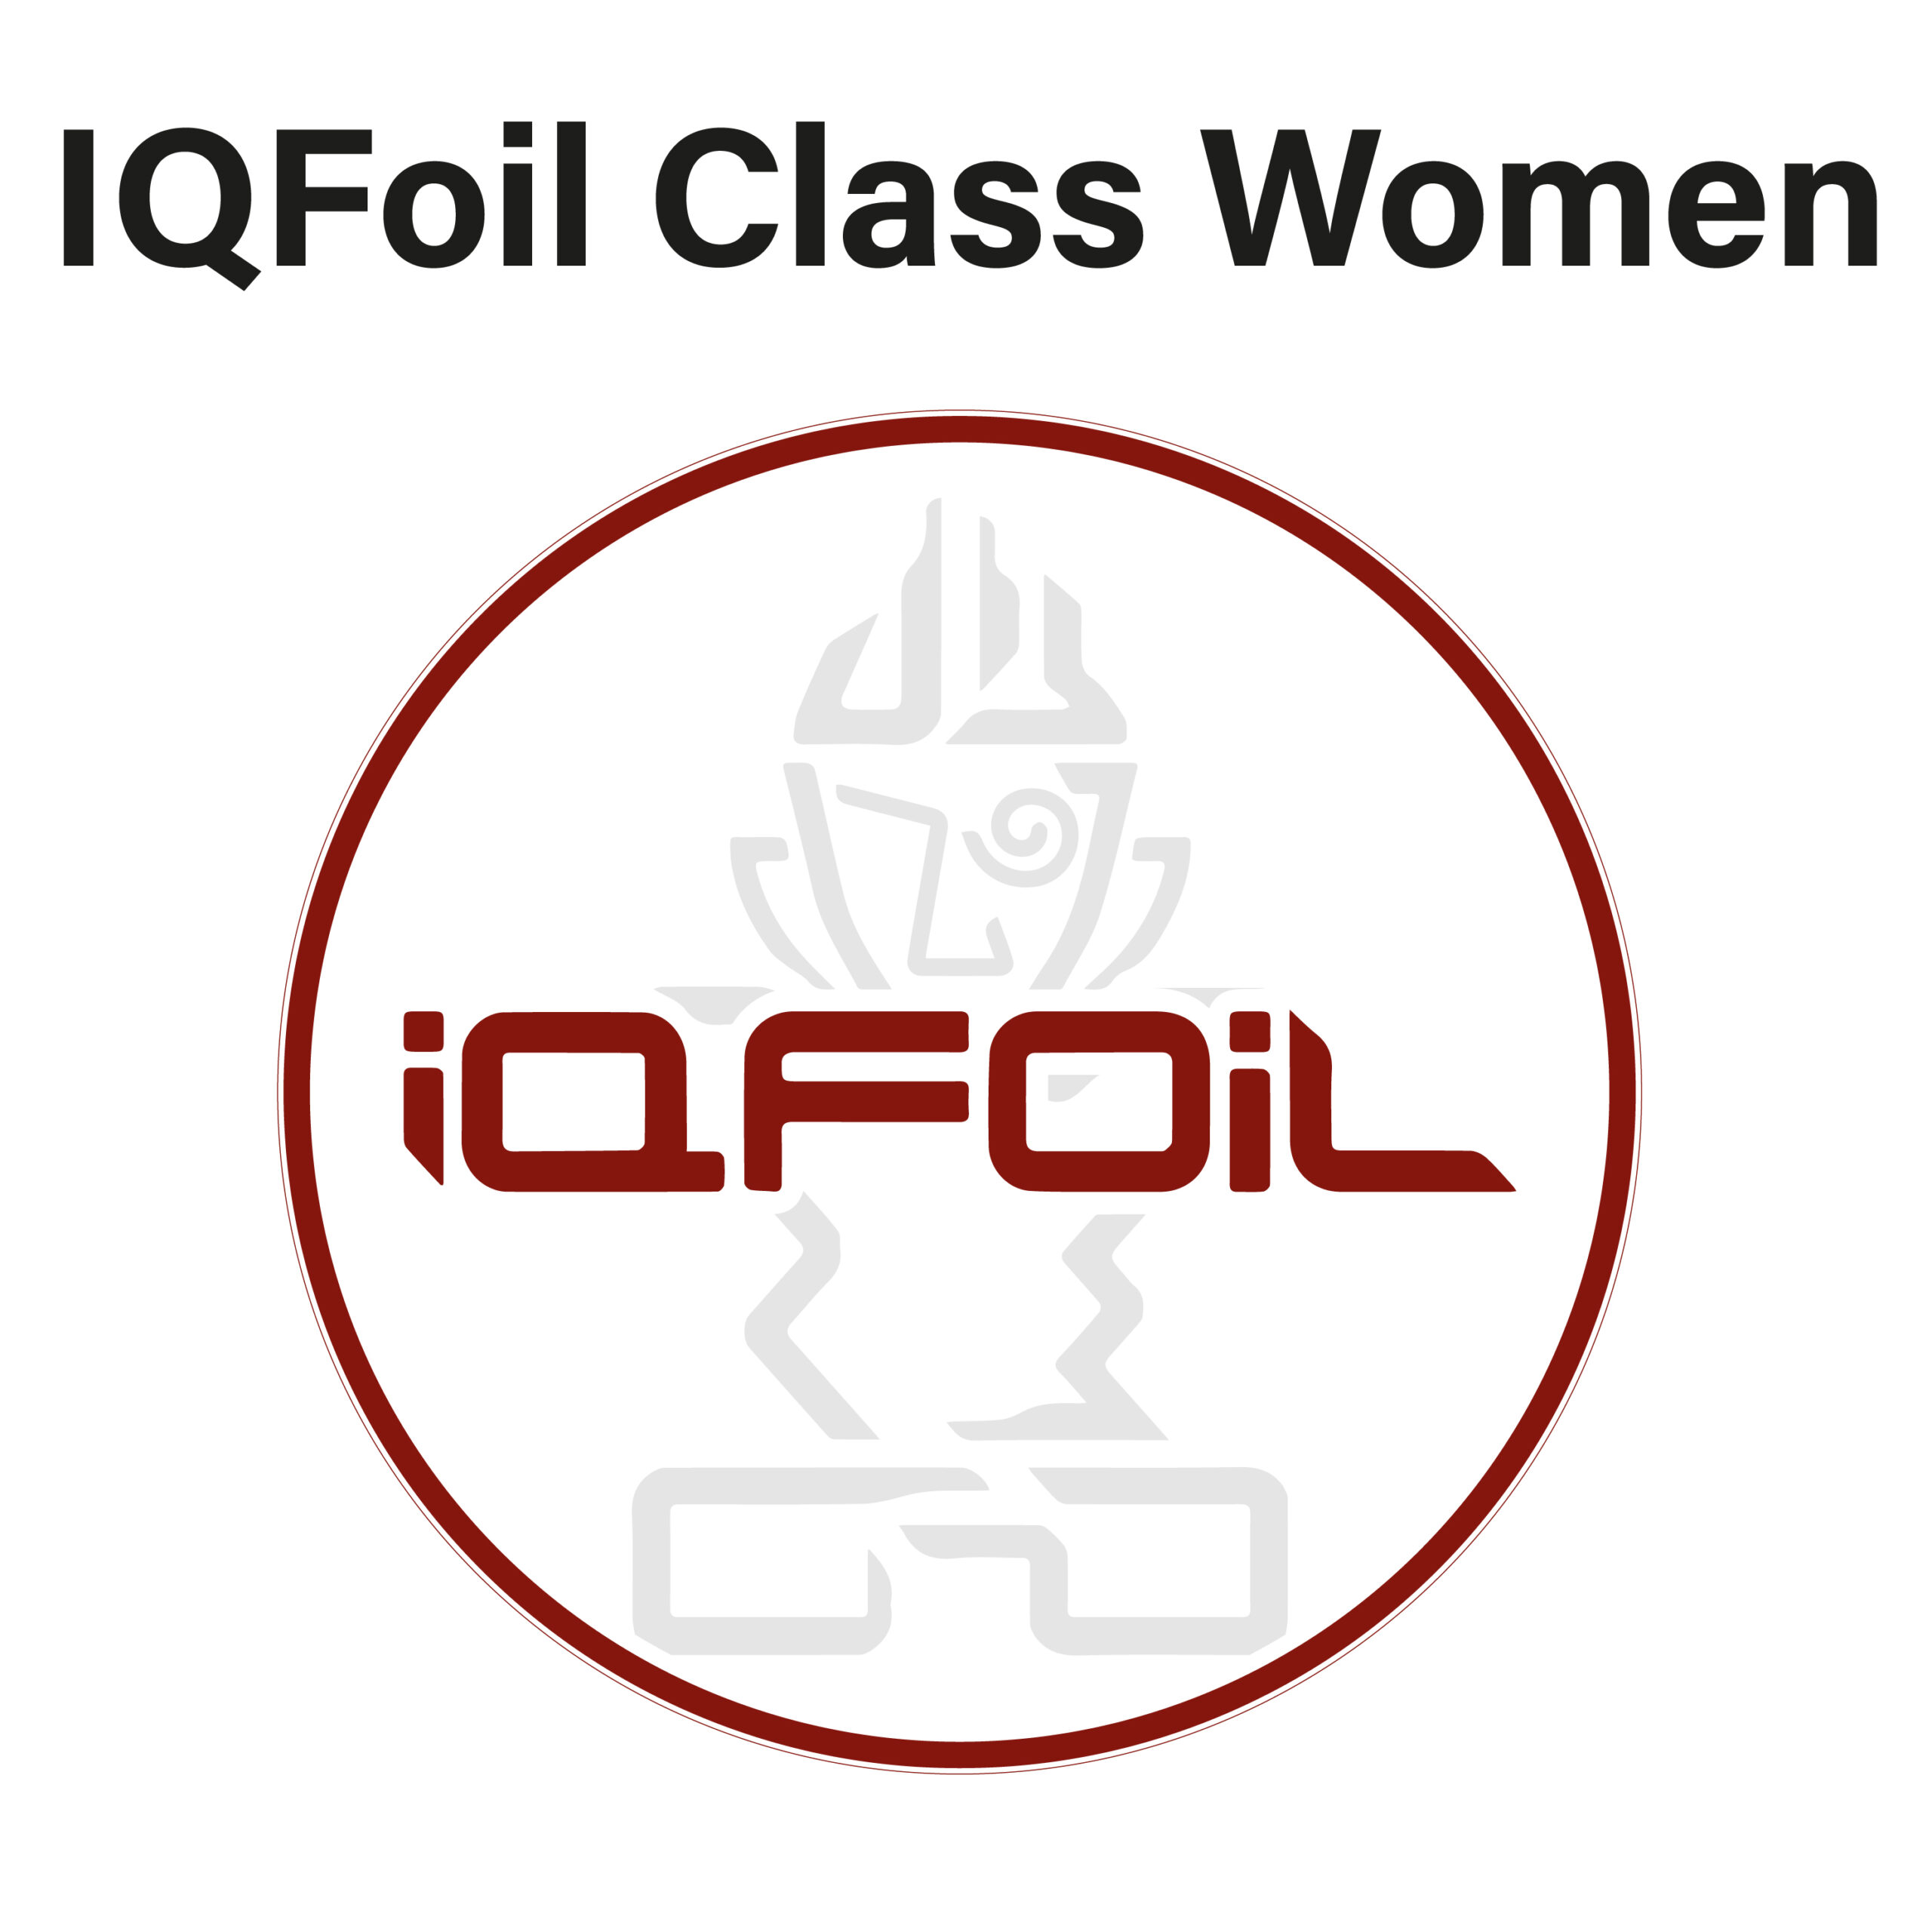 IQ Foil Class Women